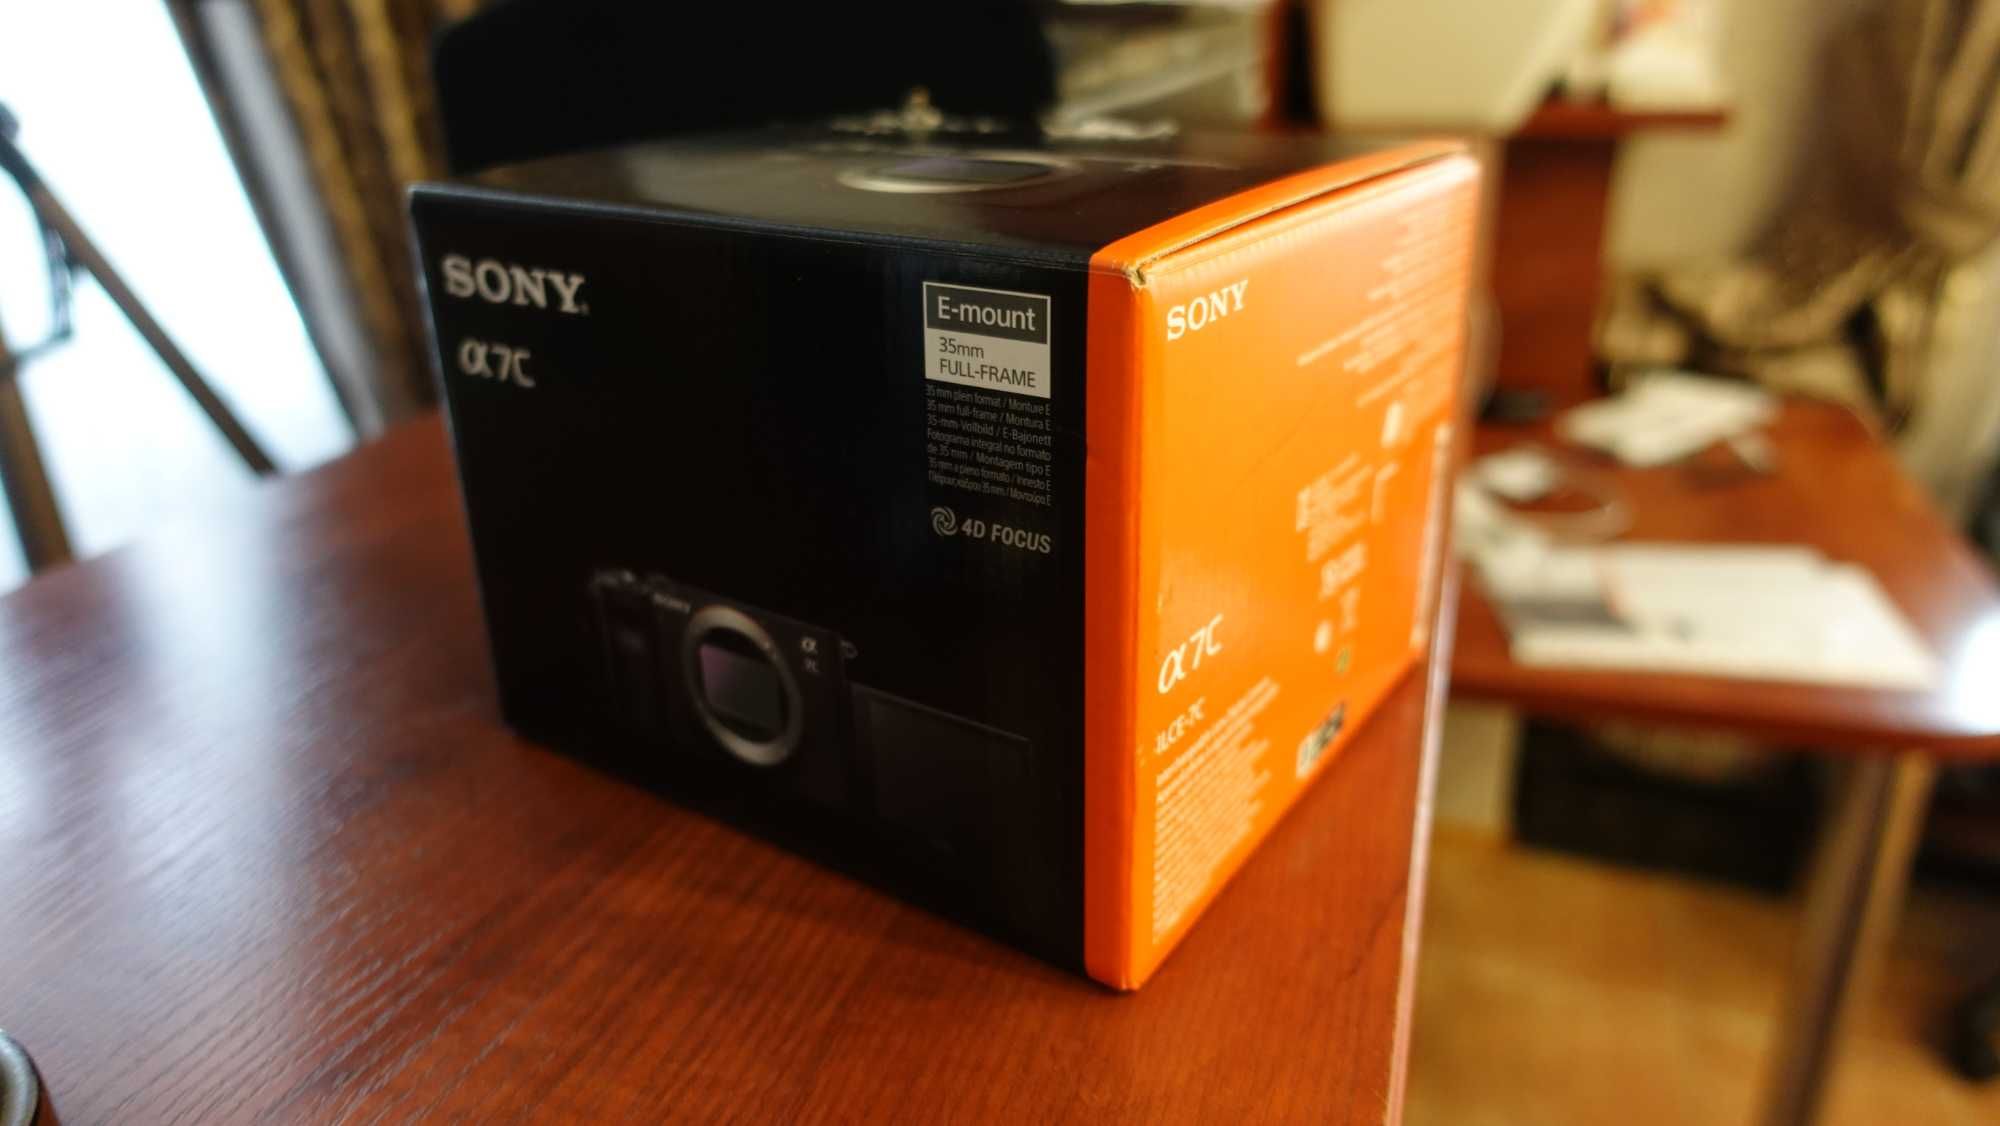 SONY камера Alpha 7C в упаковке  Торг Срочно меню на русском